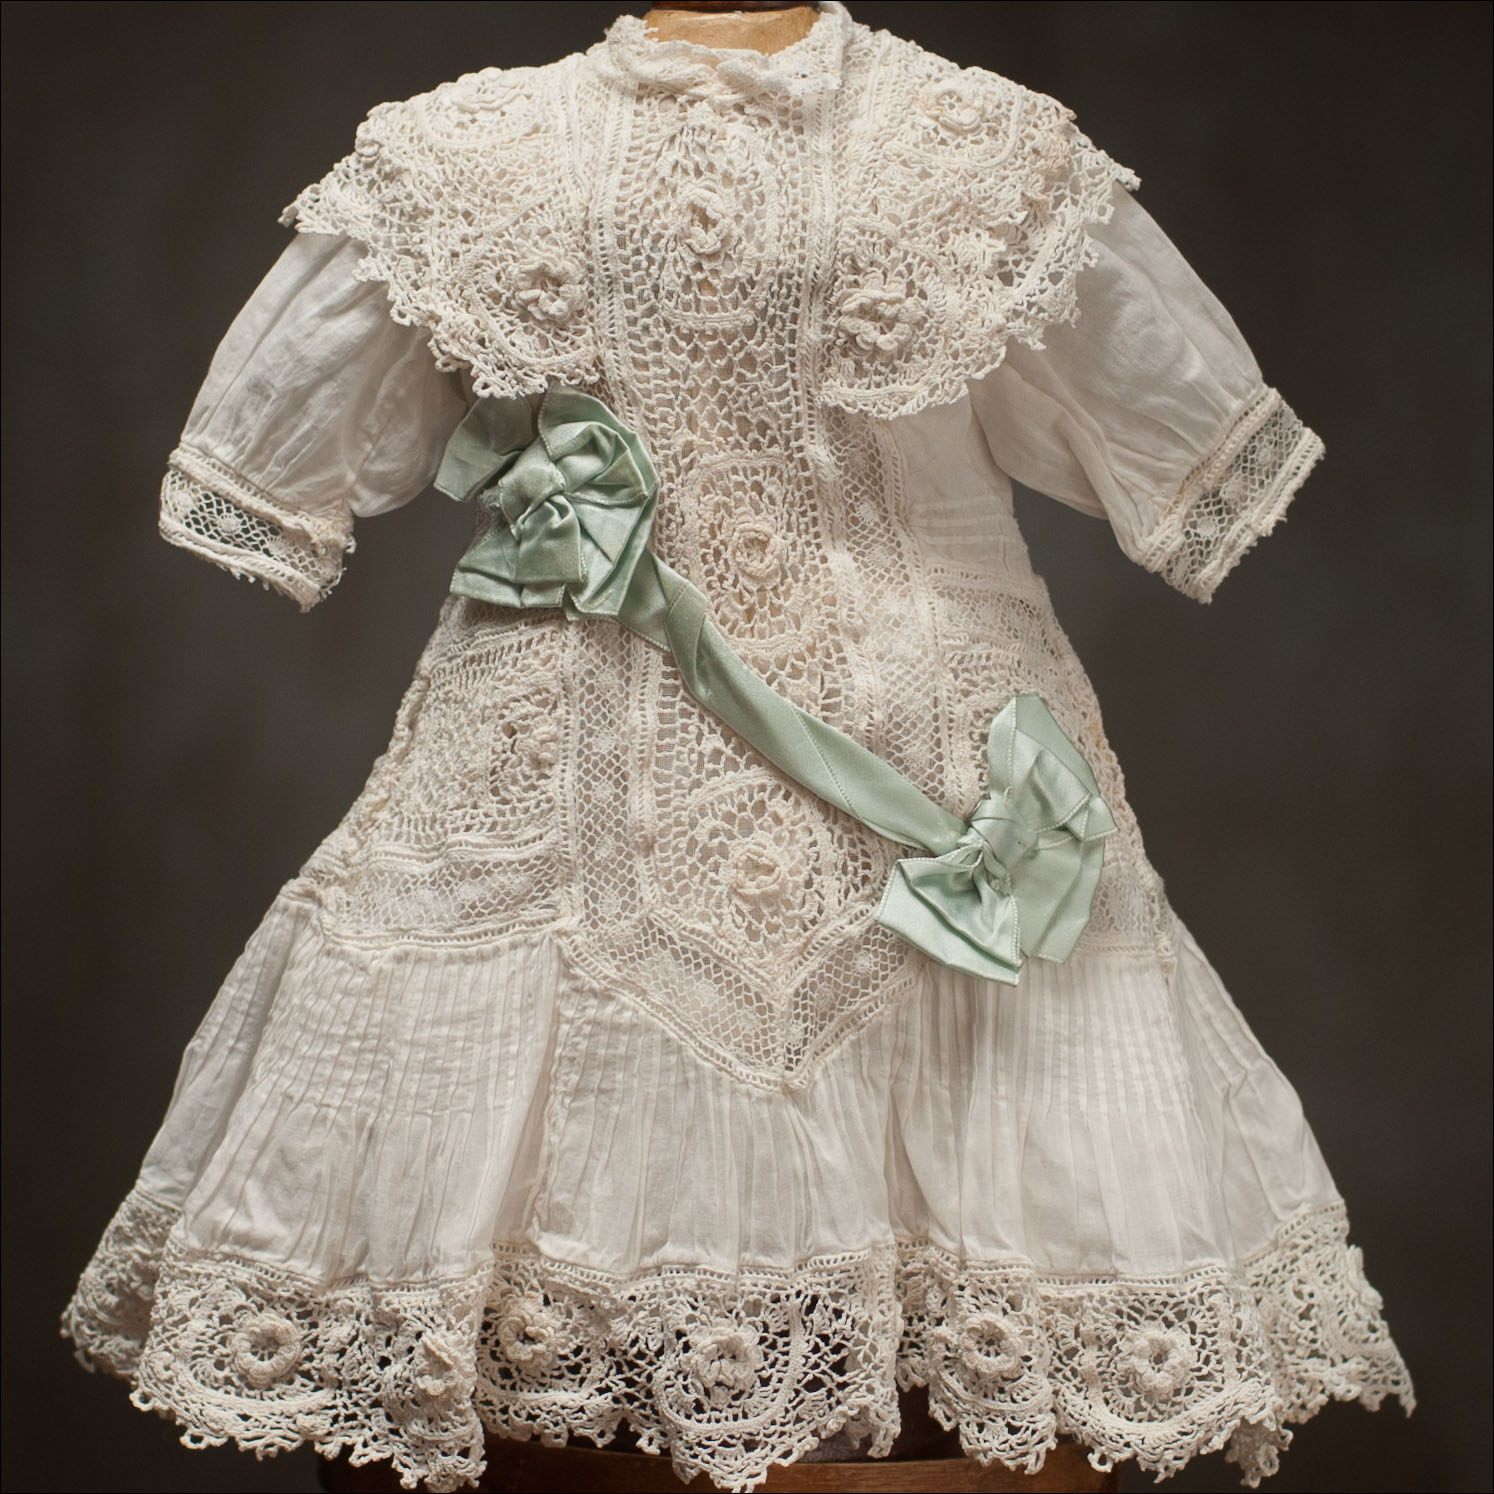 White dress with Irish Crochet Lace